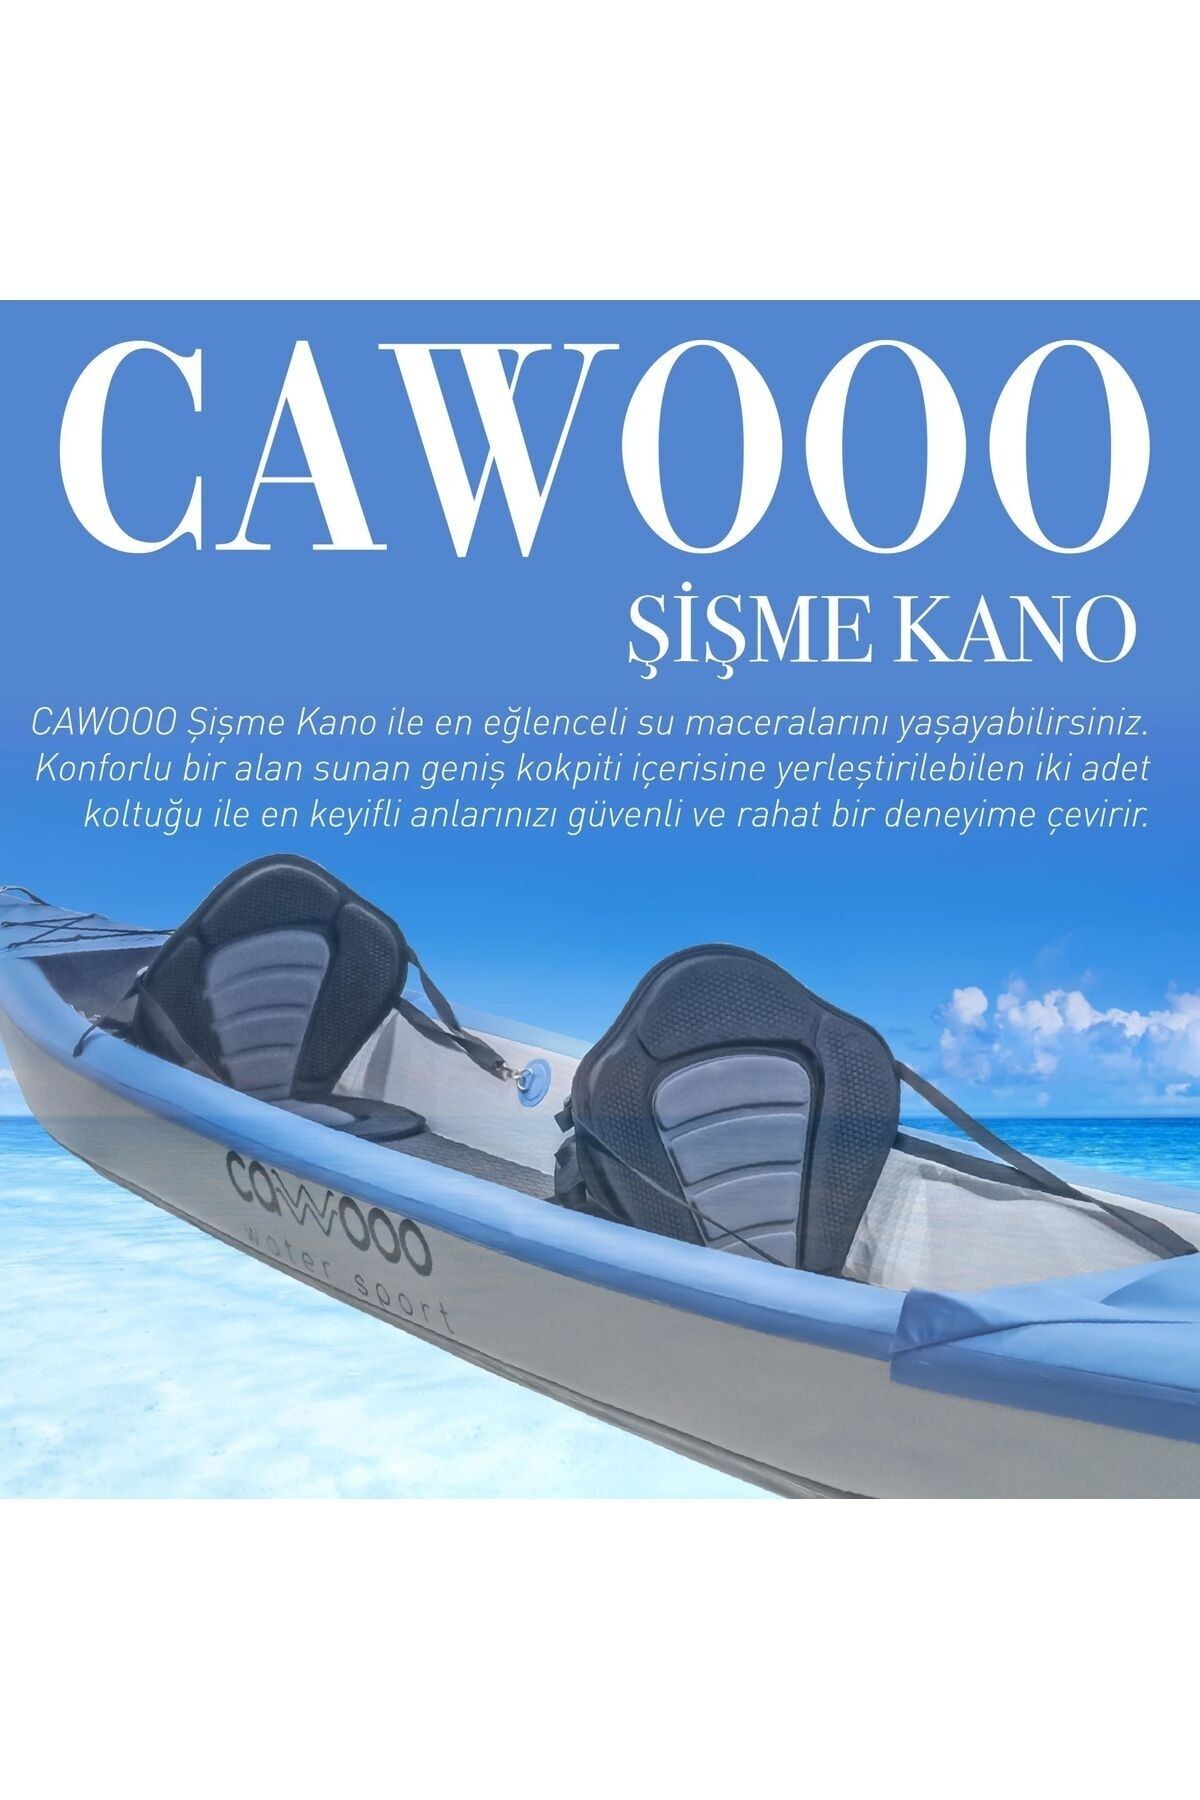 Cawooo Koltuklu Şişme Kano Kayak 2 Kişilik